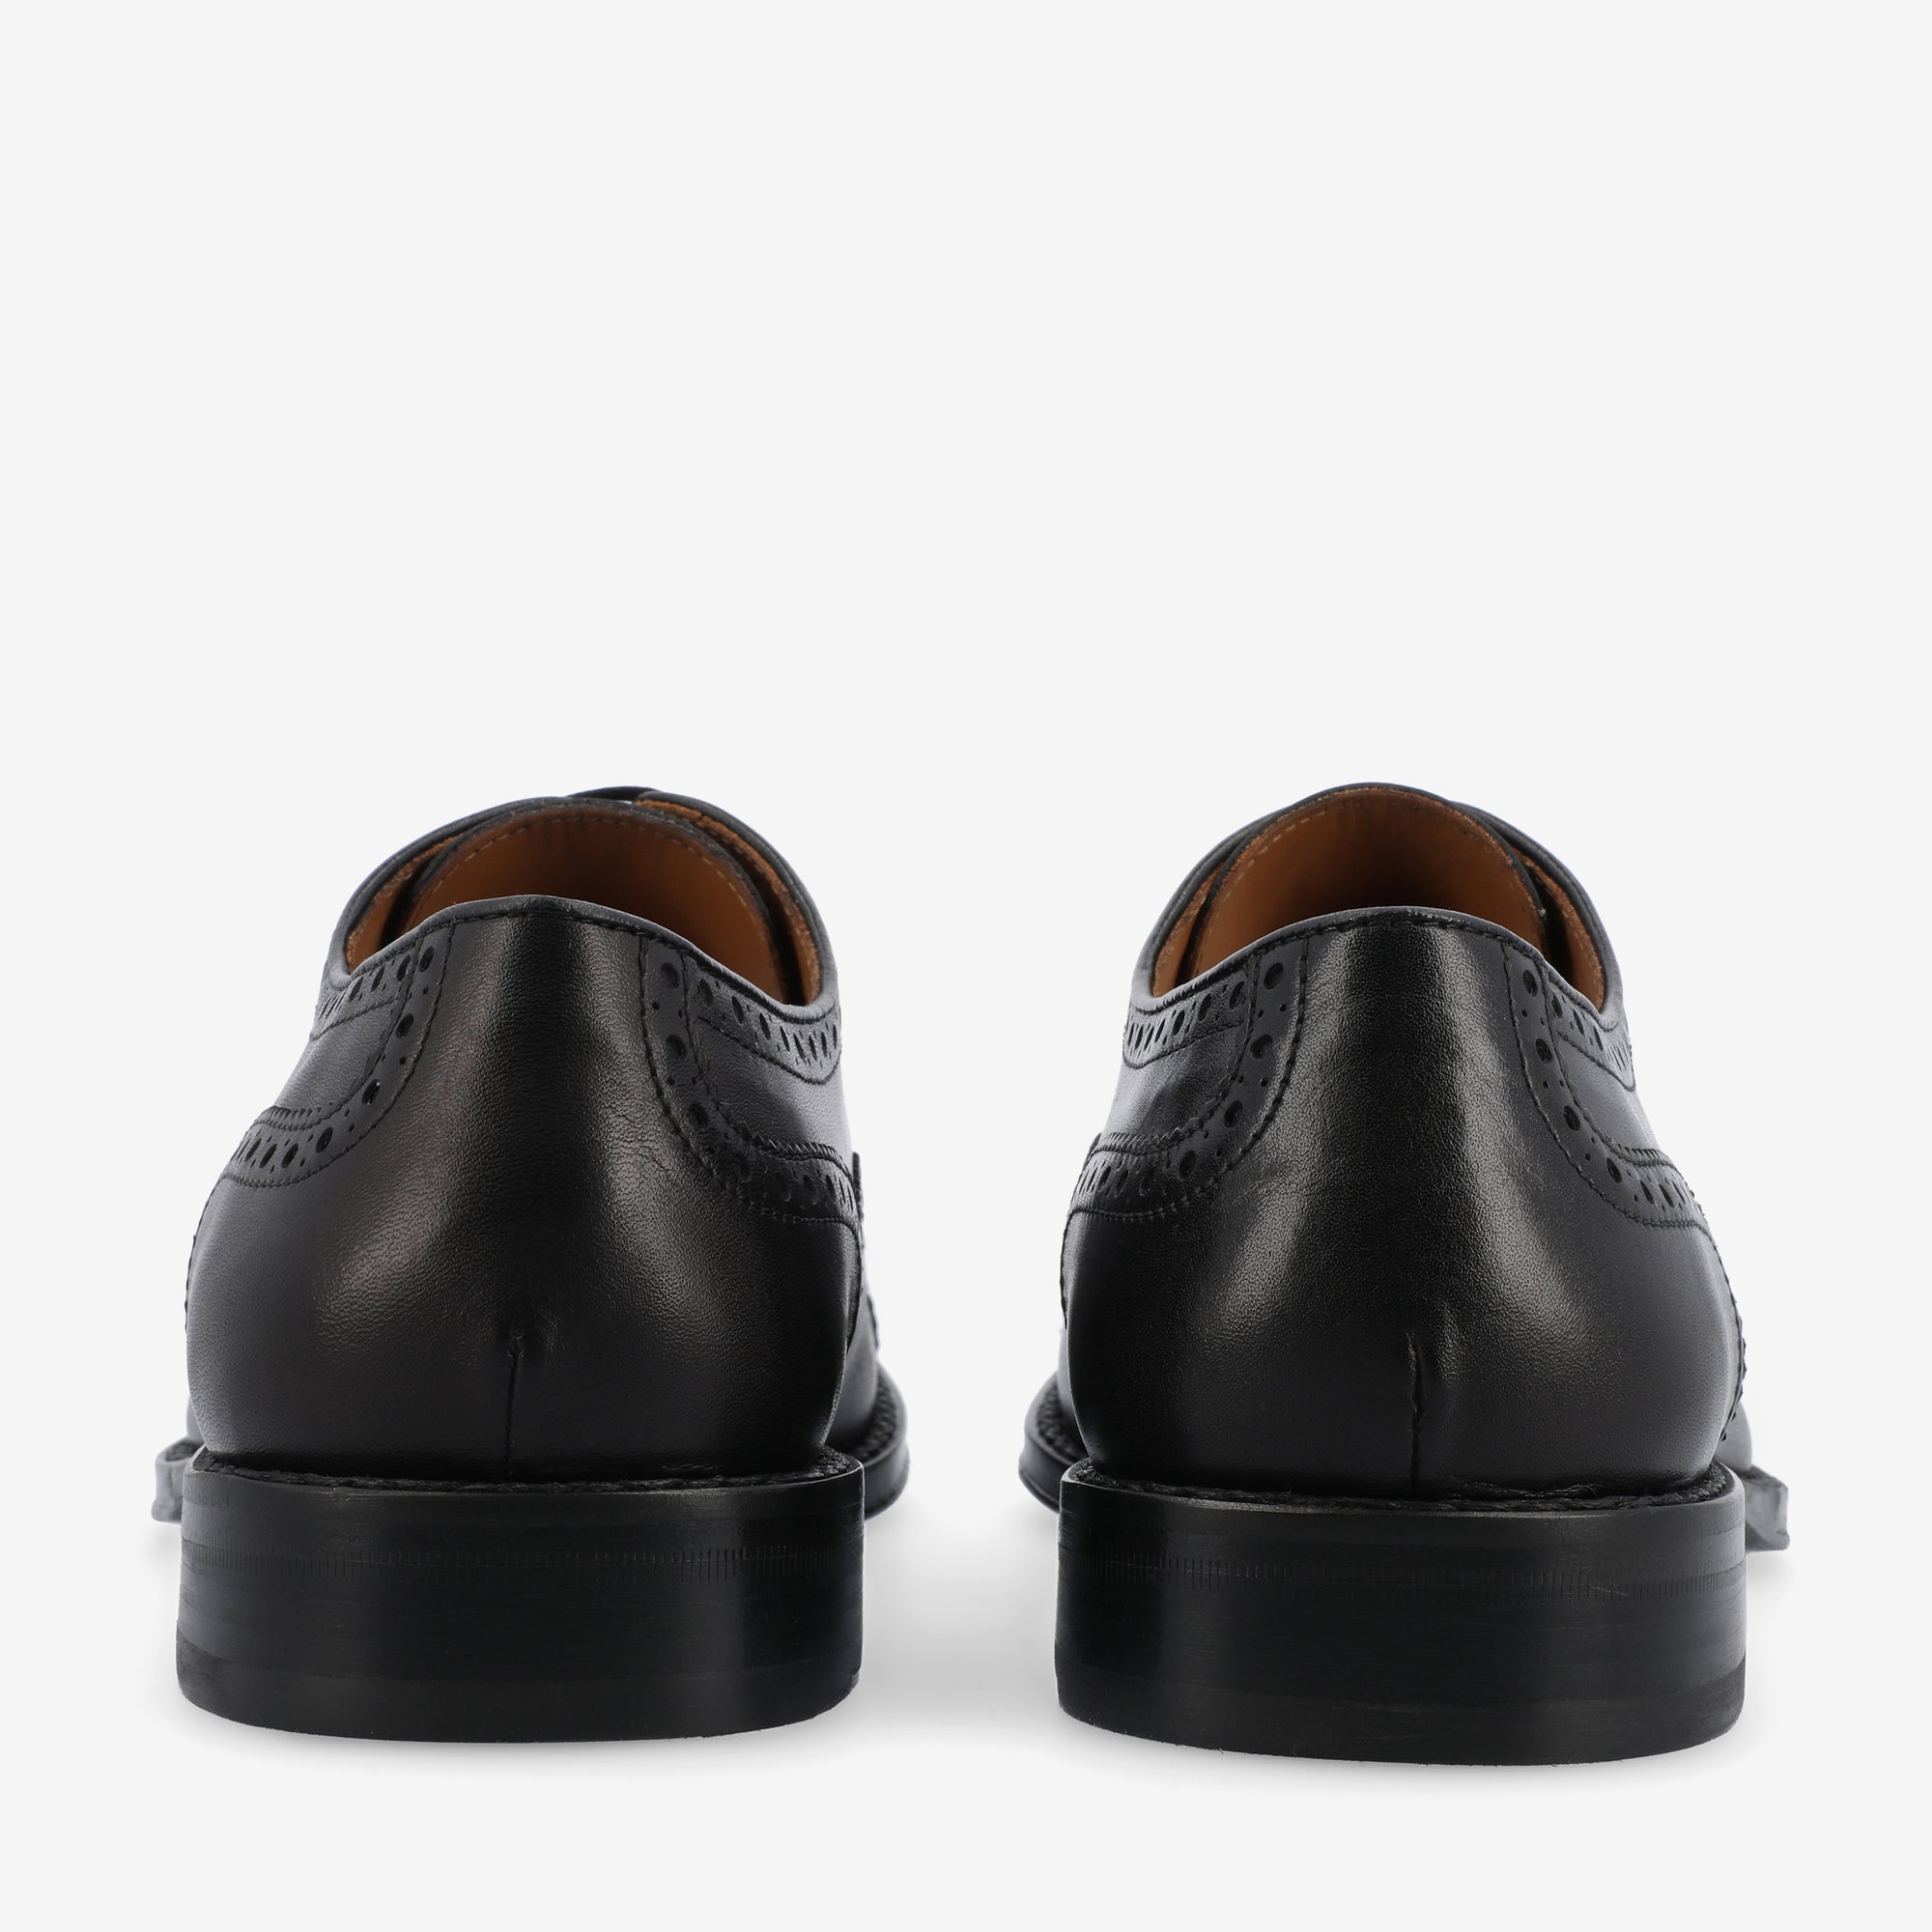 The Noah Shoe in Black